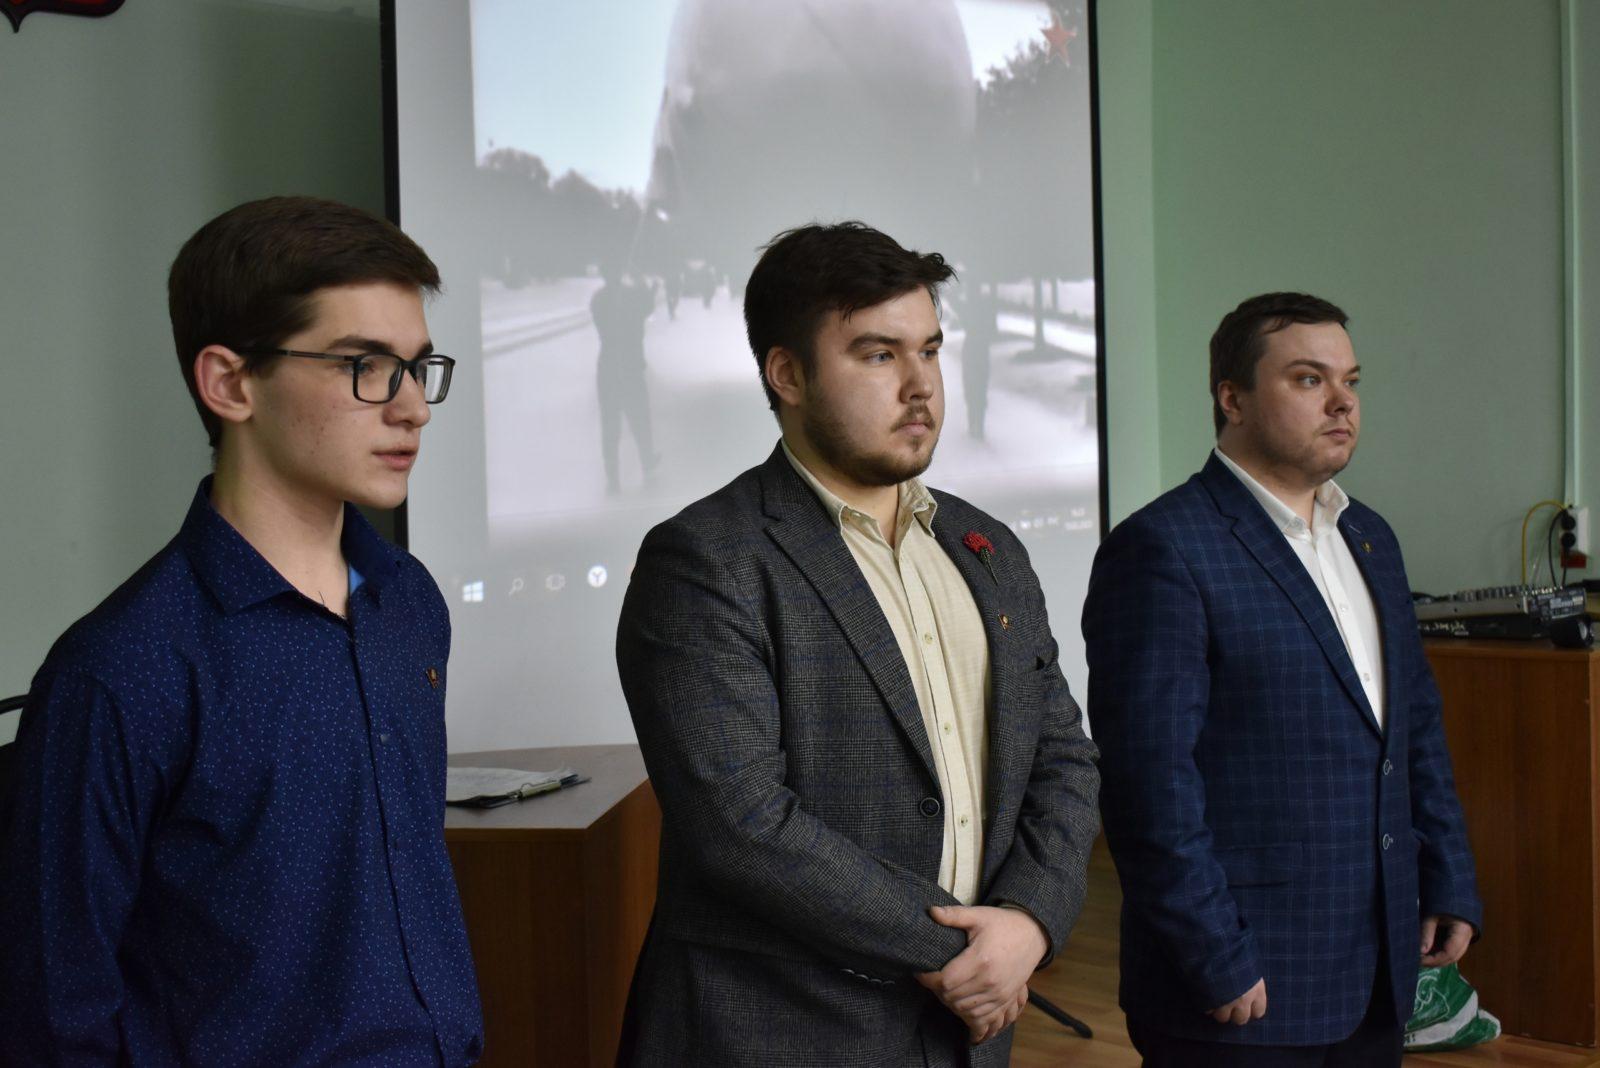 Рязанские комсомольцы провели акцию «Знамя нашей победы»